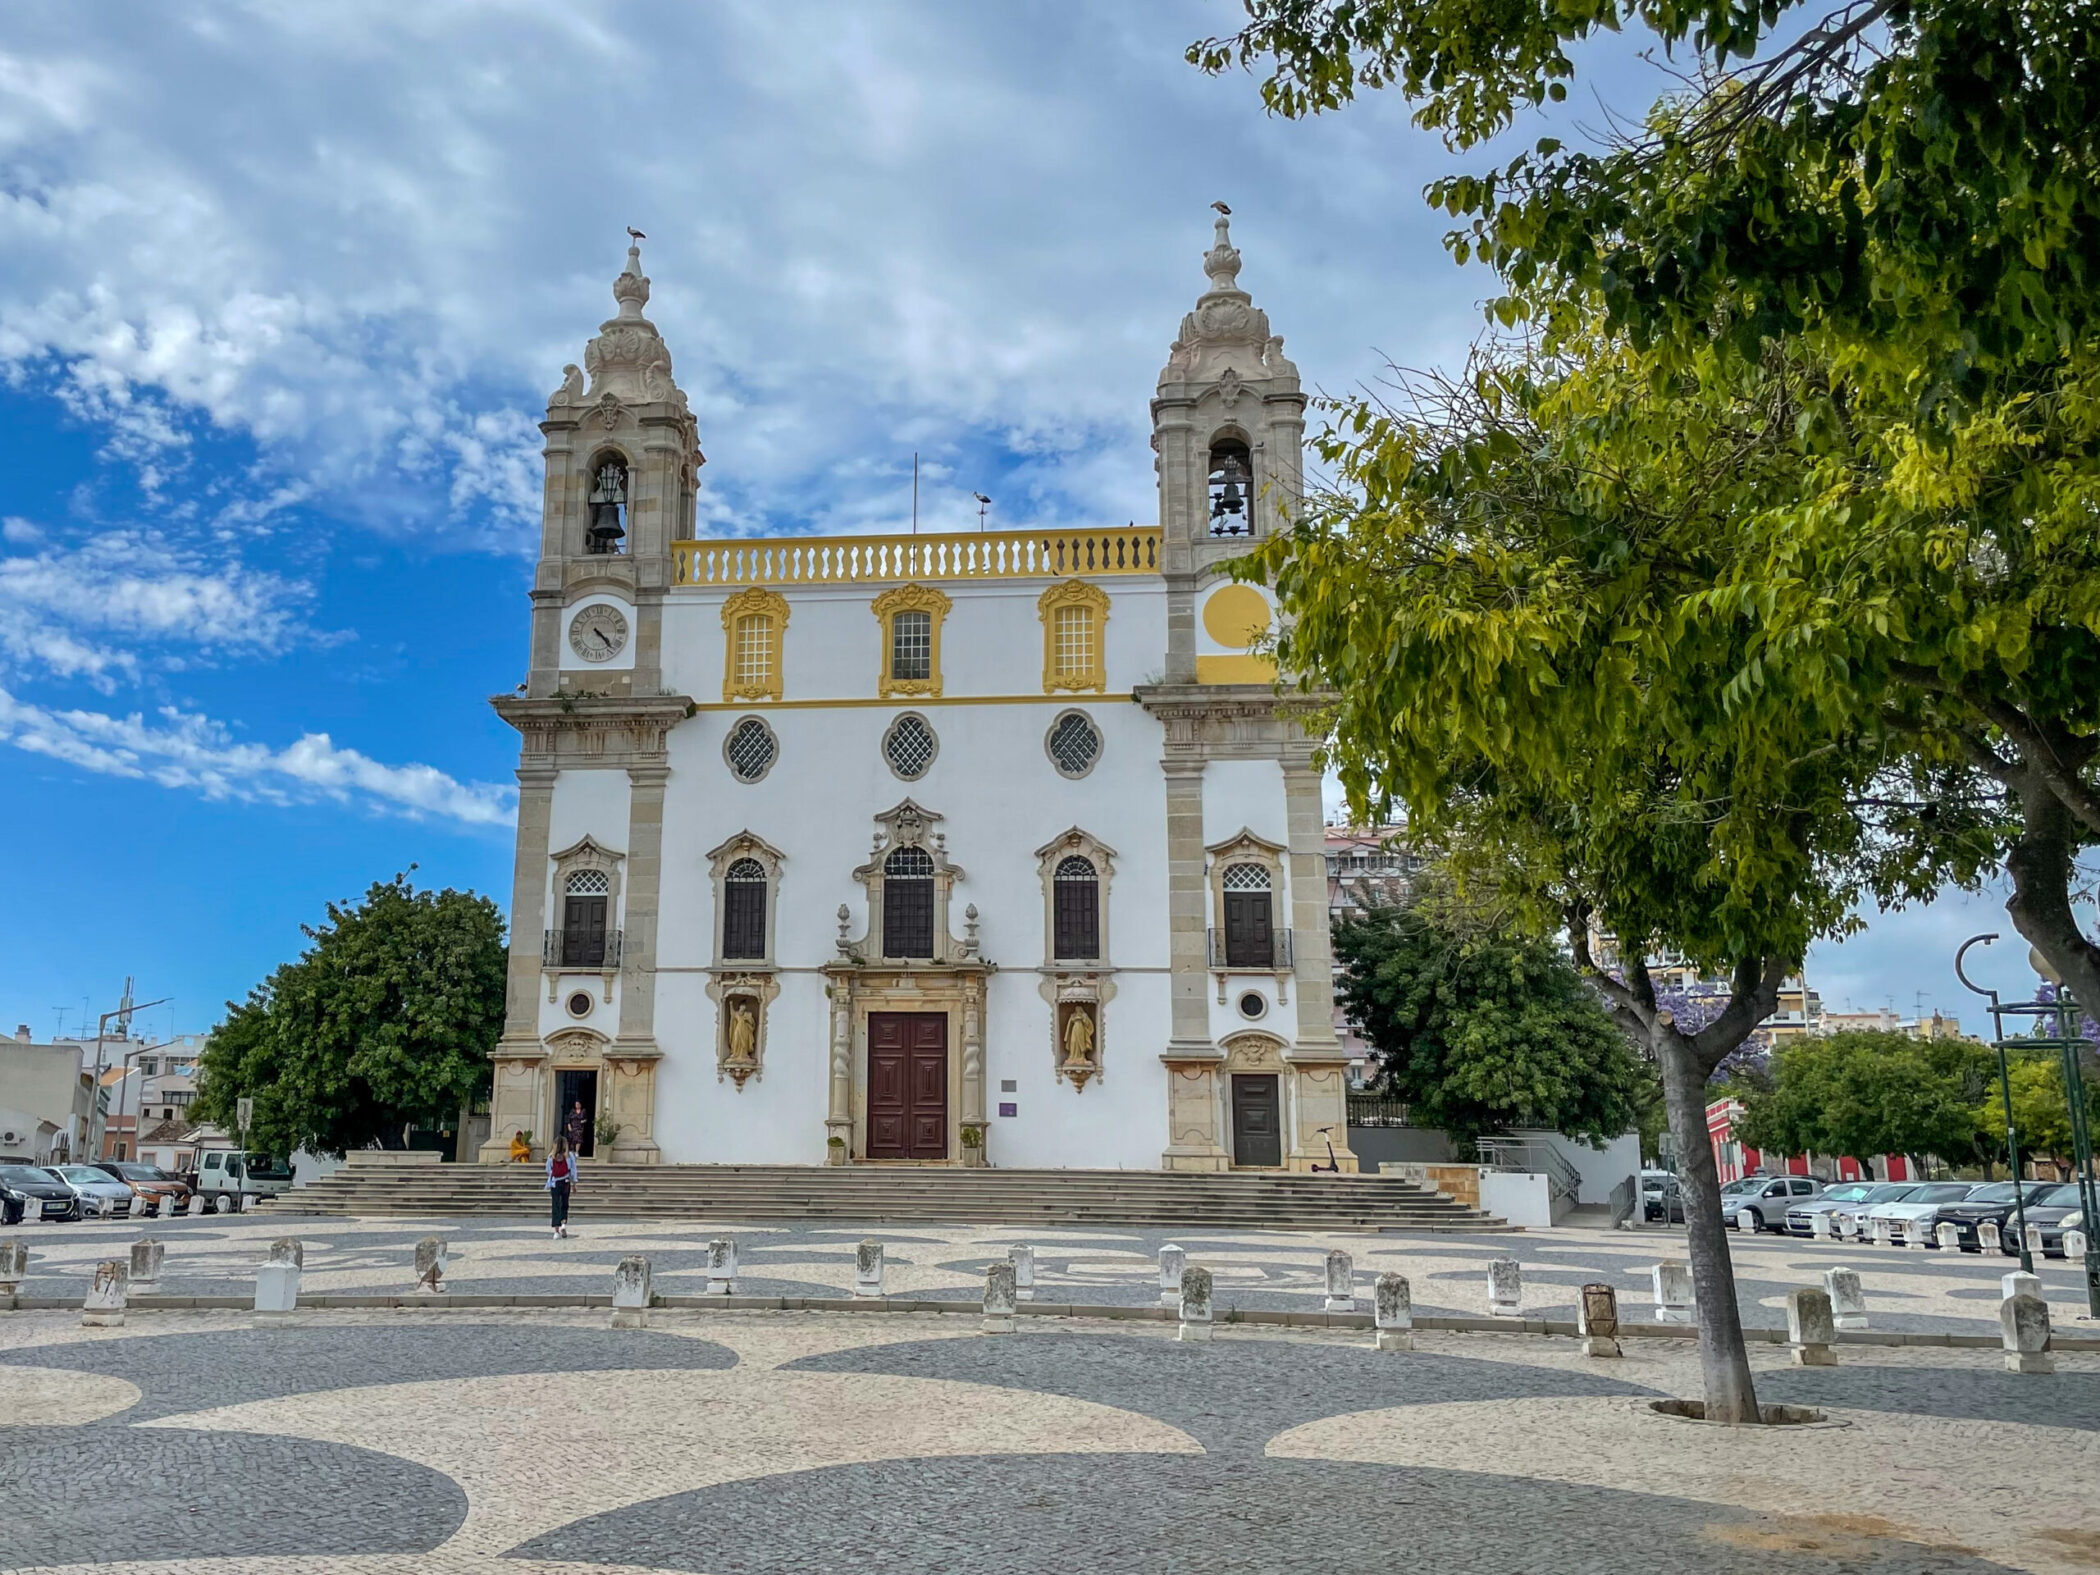 Maak vanuit Olhao een uitstapje naar Faro in de Algarve